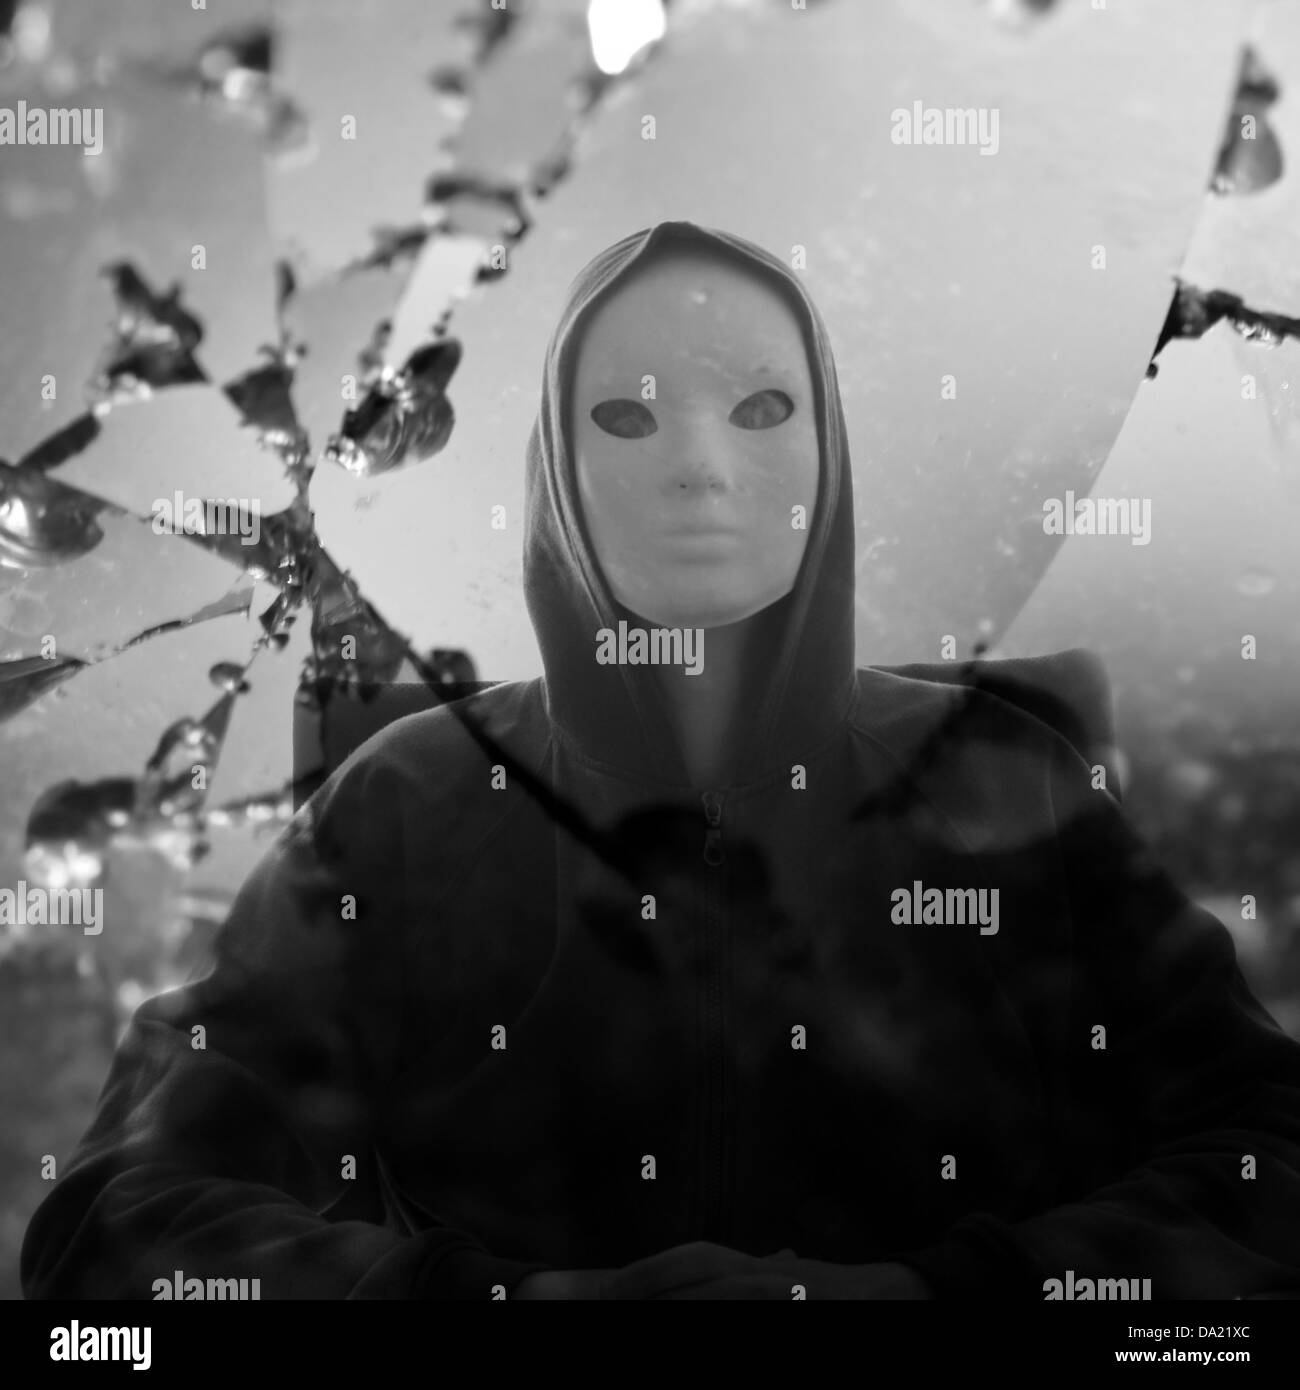 Maskierte Figur durch zerbrochenes Glasspiegel reflektiert. Schwarz und weiß. Stockfoto